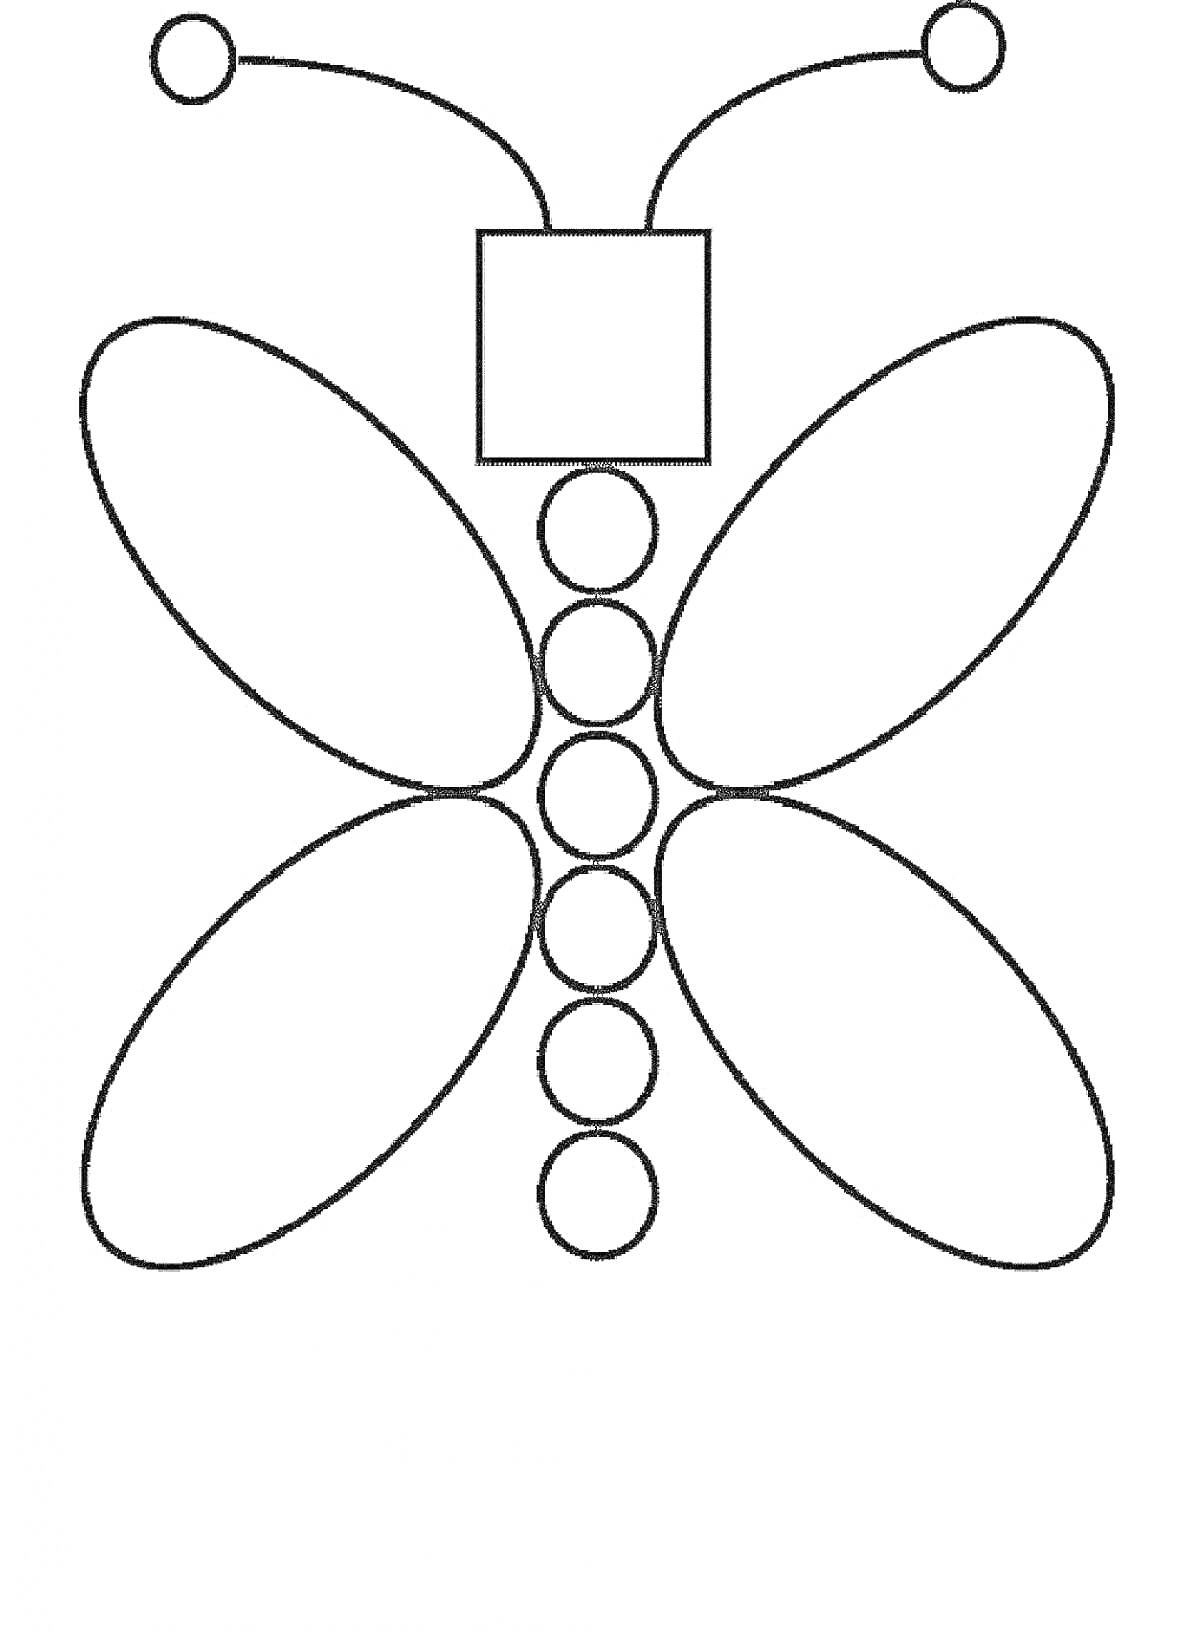 Раскраска Бабочка из геометрических фигур (прямоугольник, круги, овалы, антенны в форме кривых с кругами на концах)